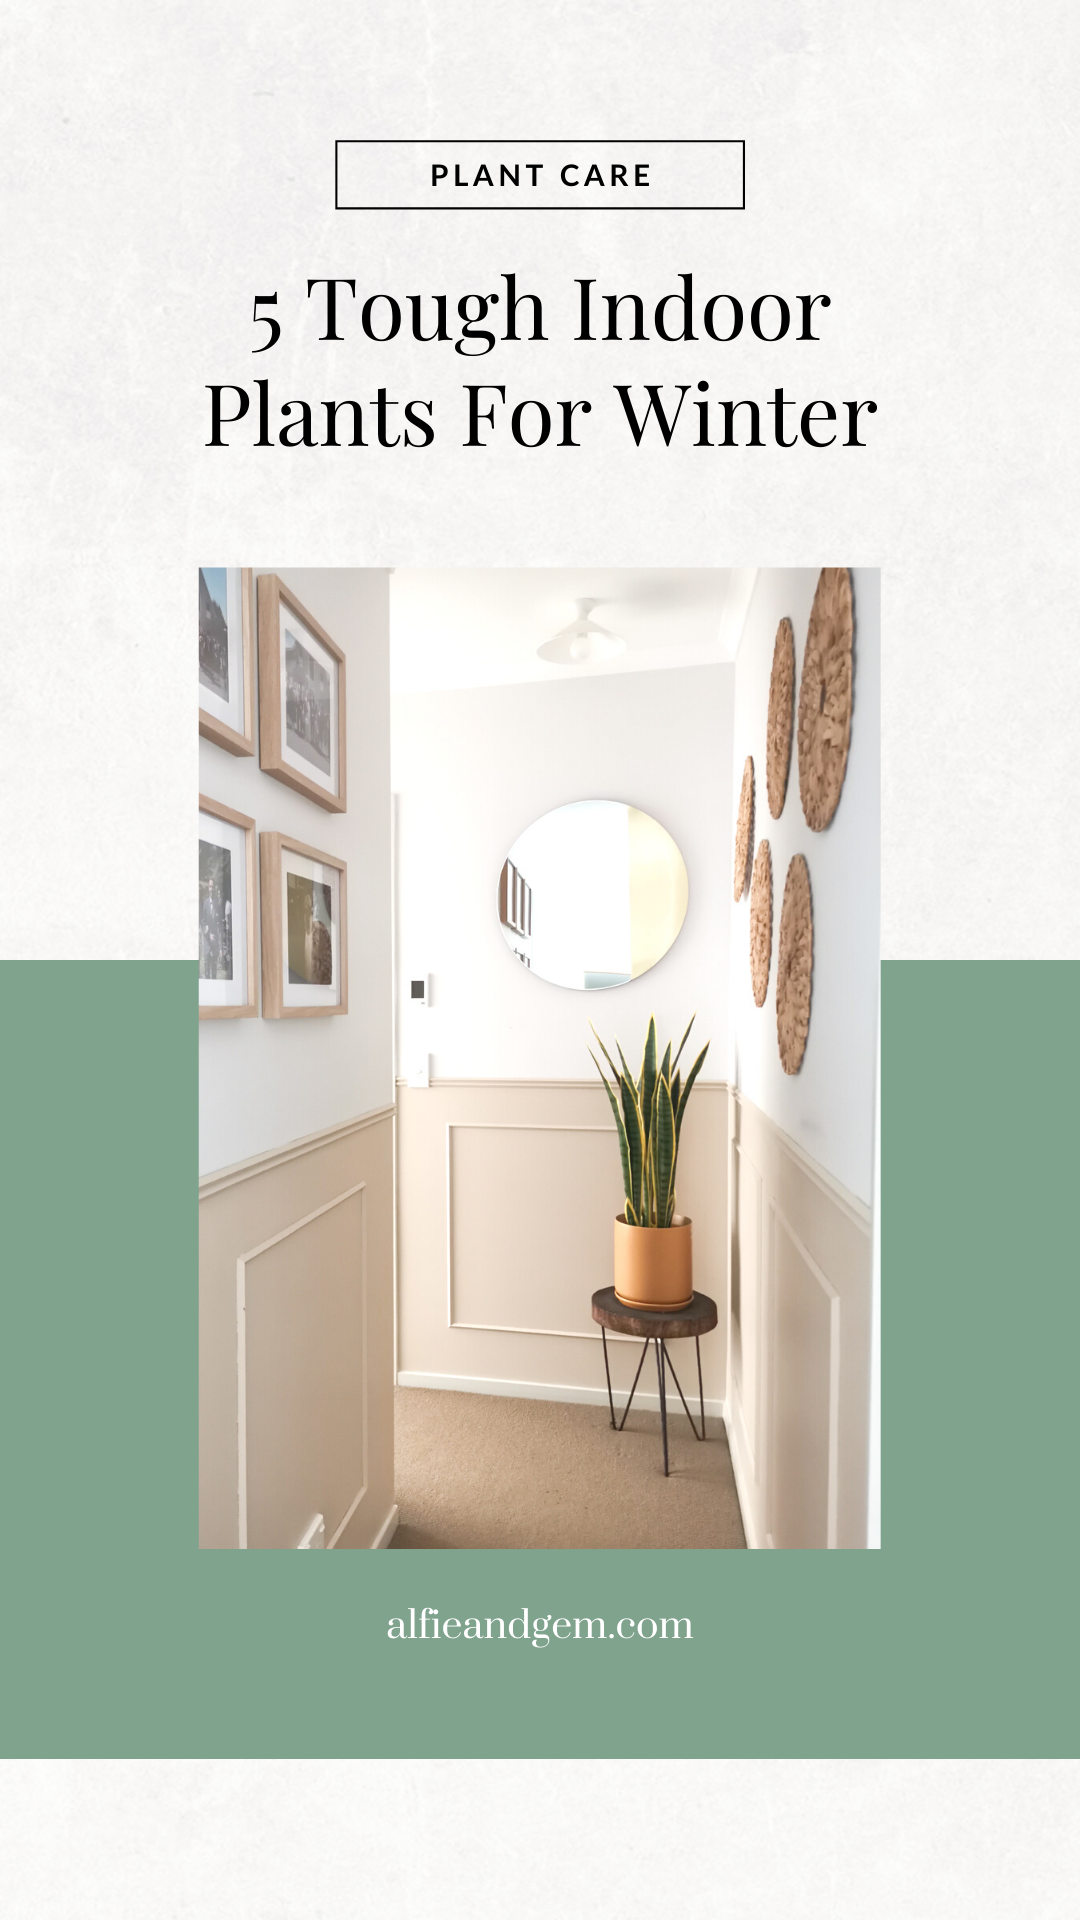 Best Winter Plants